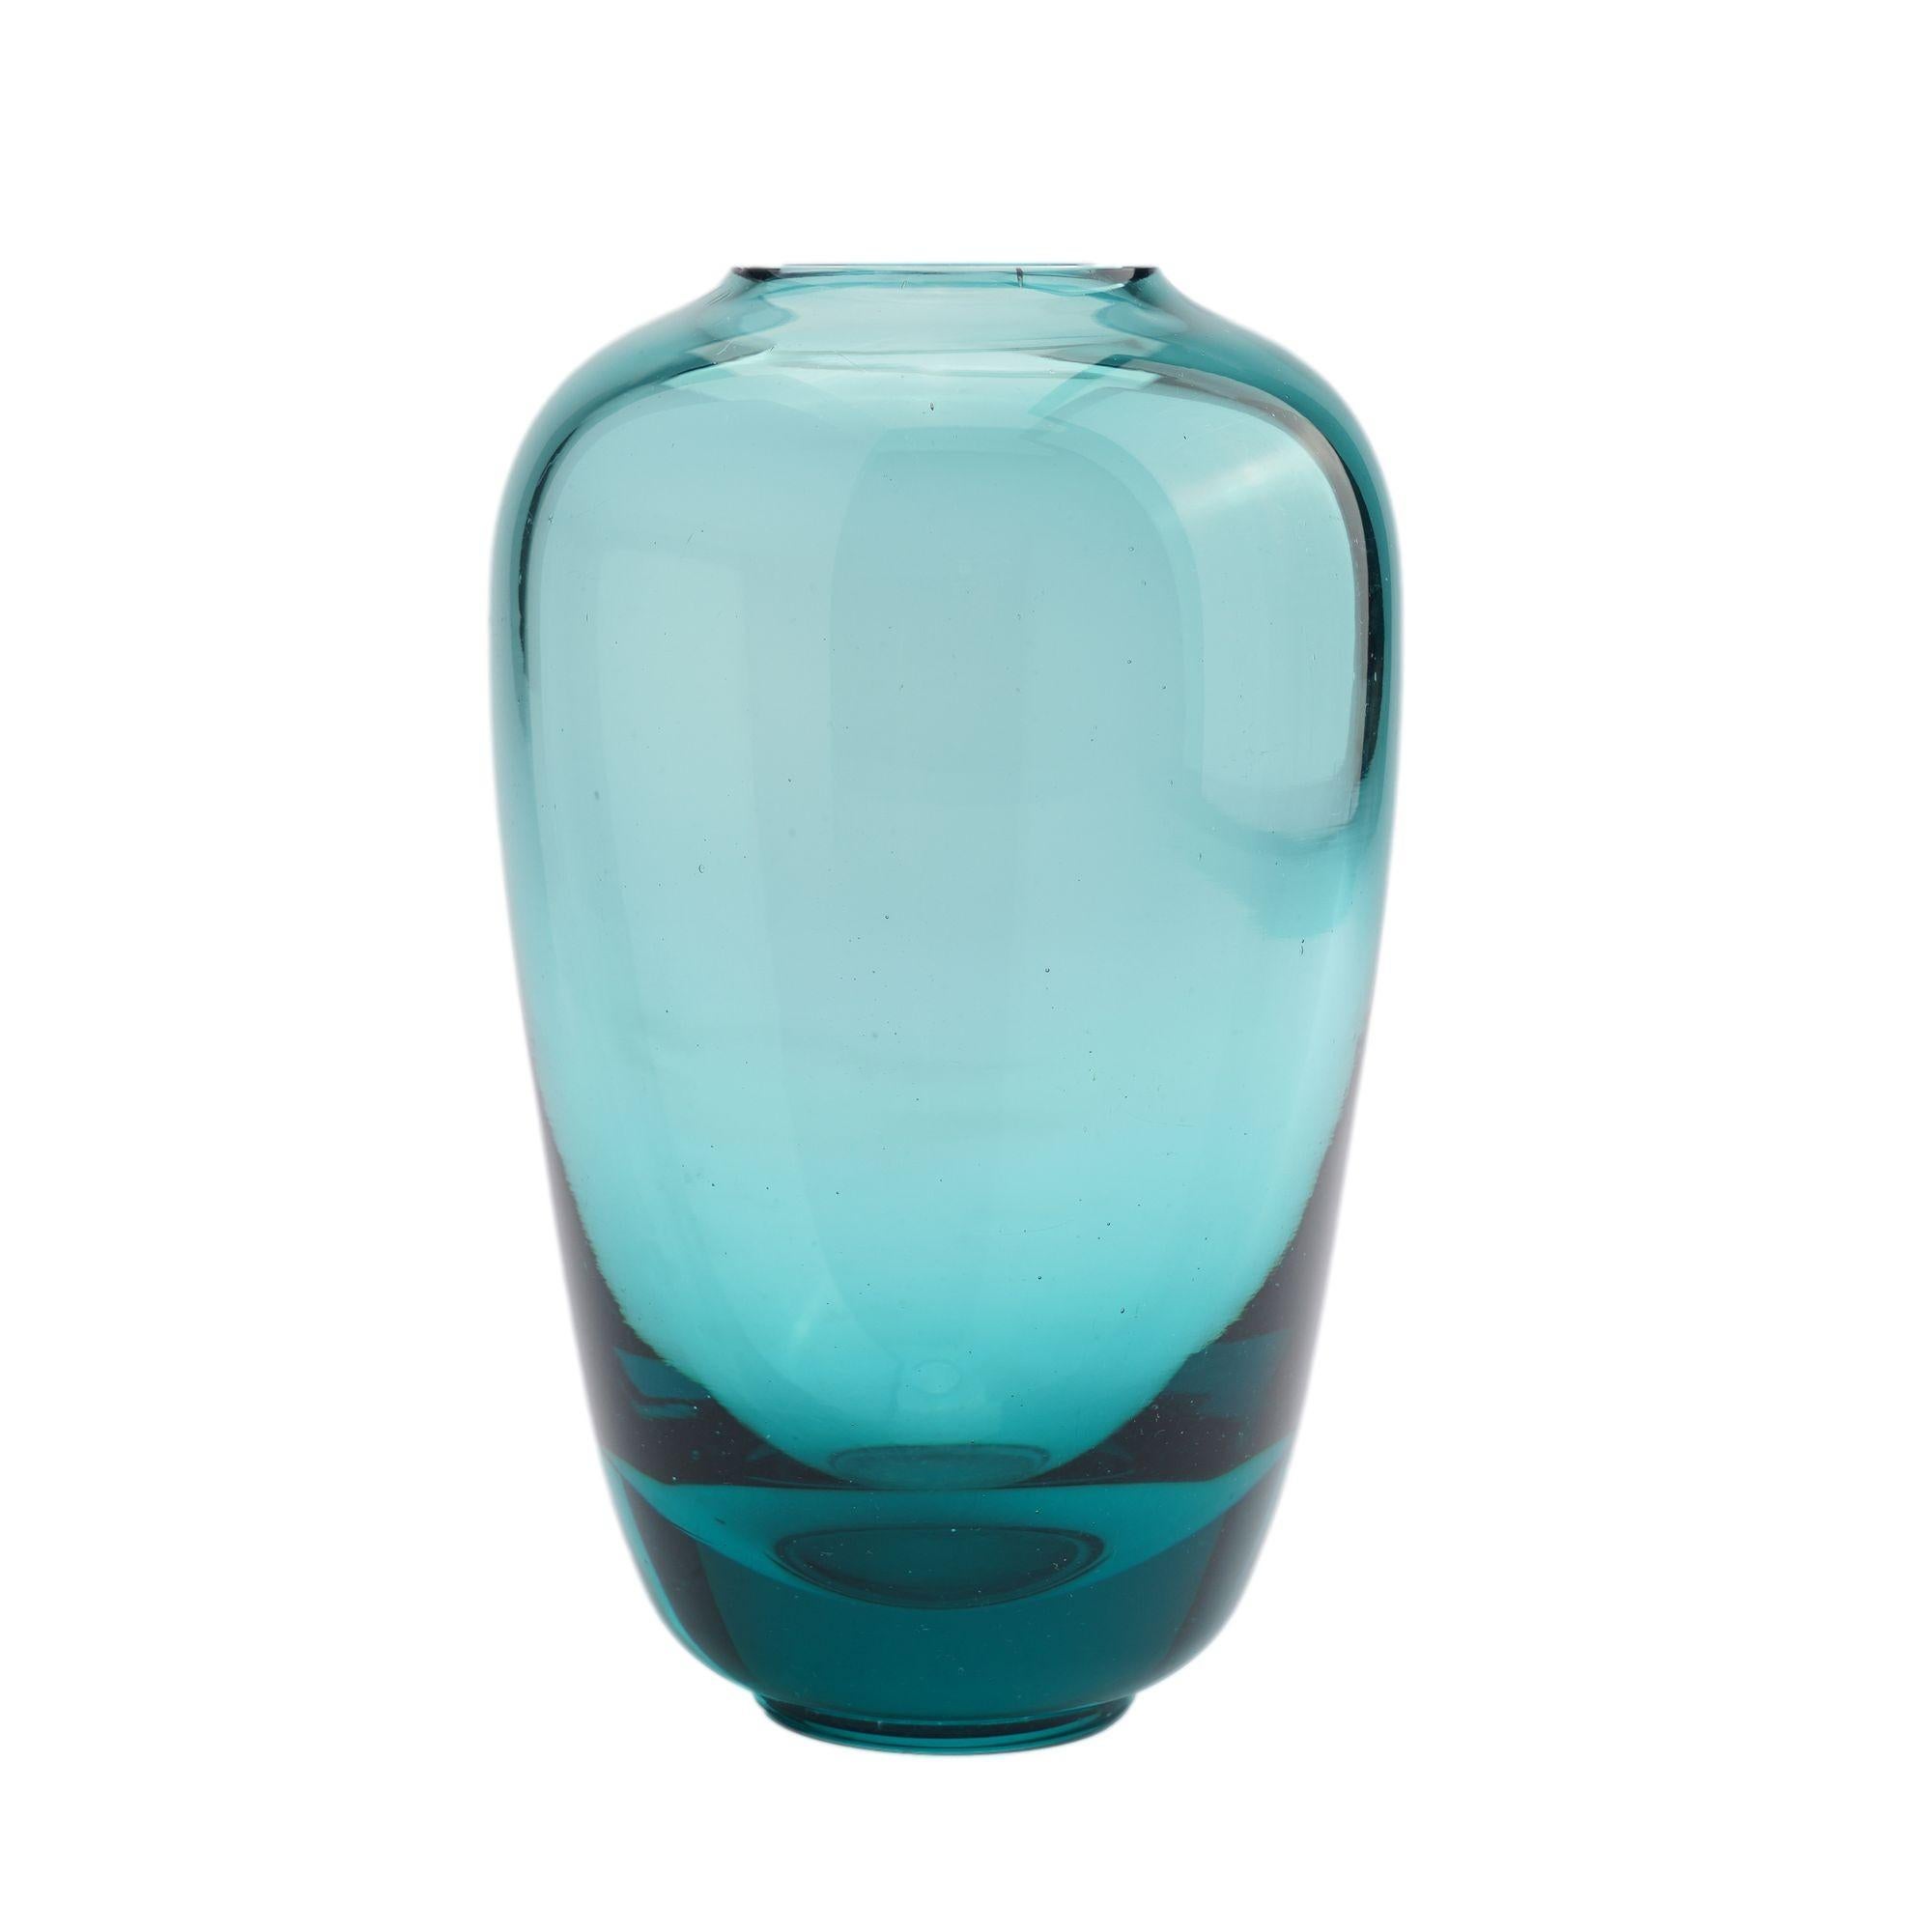 Vase en verre d'art soufflé et fuselé de couleur bleu/vert, caractéristique de Karhula, avec un pied circulaire et un pontil poli. Conçu par Göran Hongell.

Signé sous le pied : GF 11, Karhula

Finlande, années 1940.